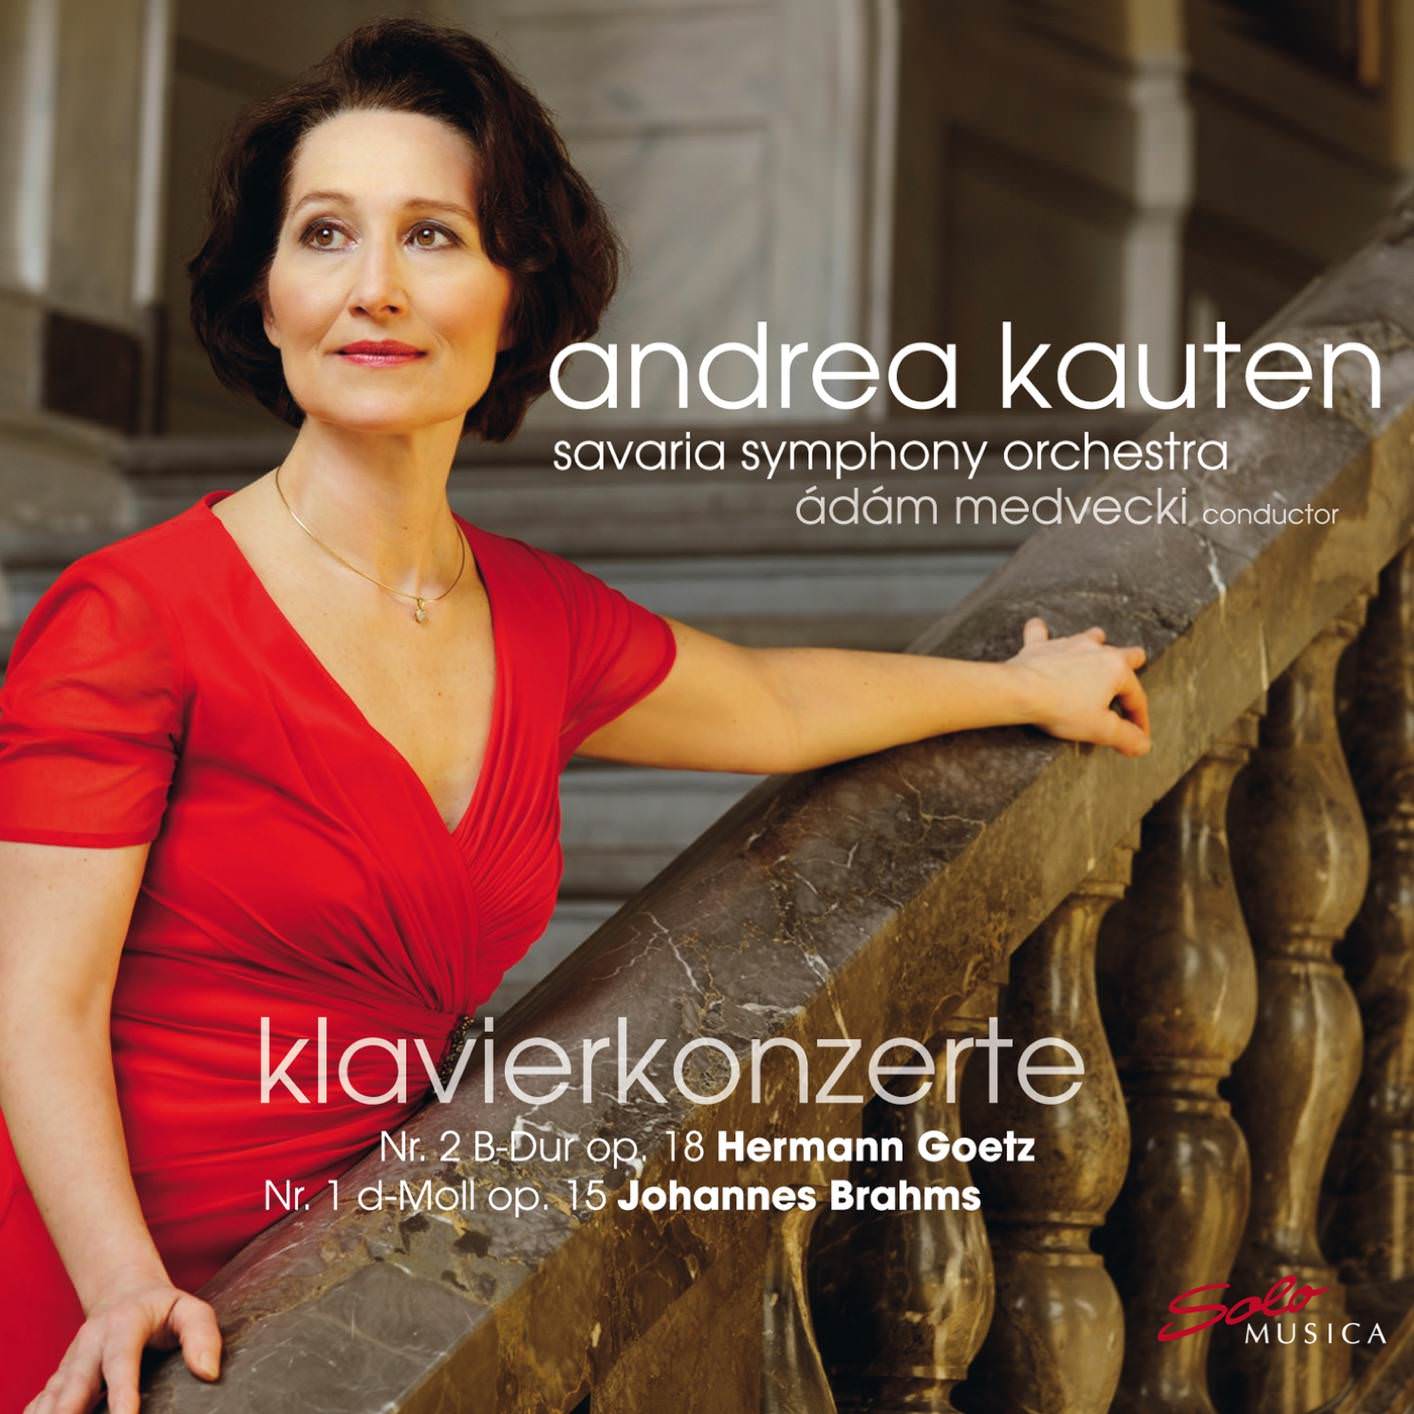 Andrea Kauten - Klavierkonzerte (2018) [FLAC 24bit/96kHz]